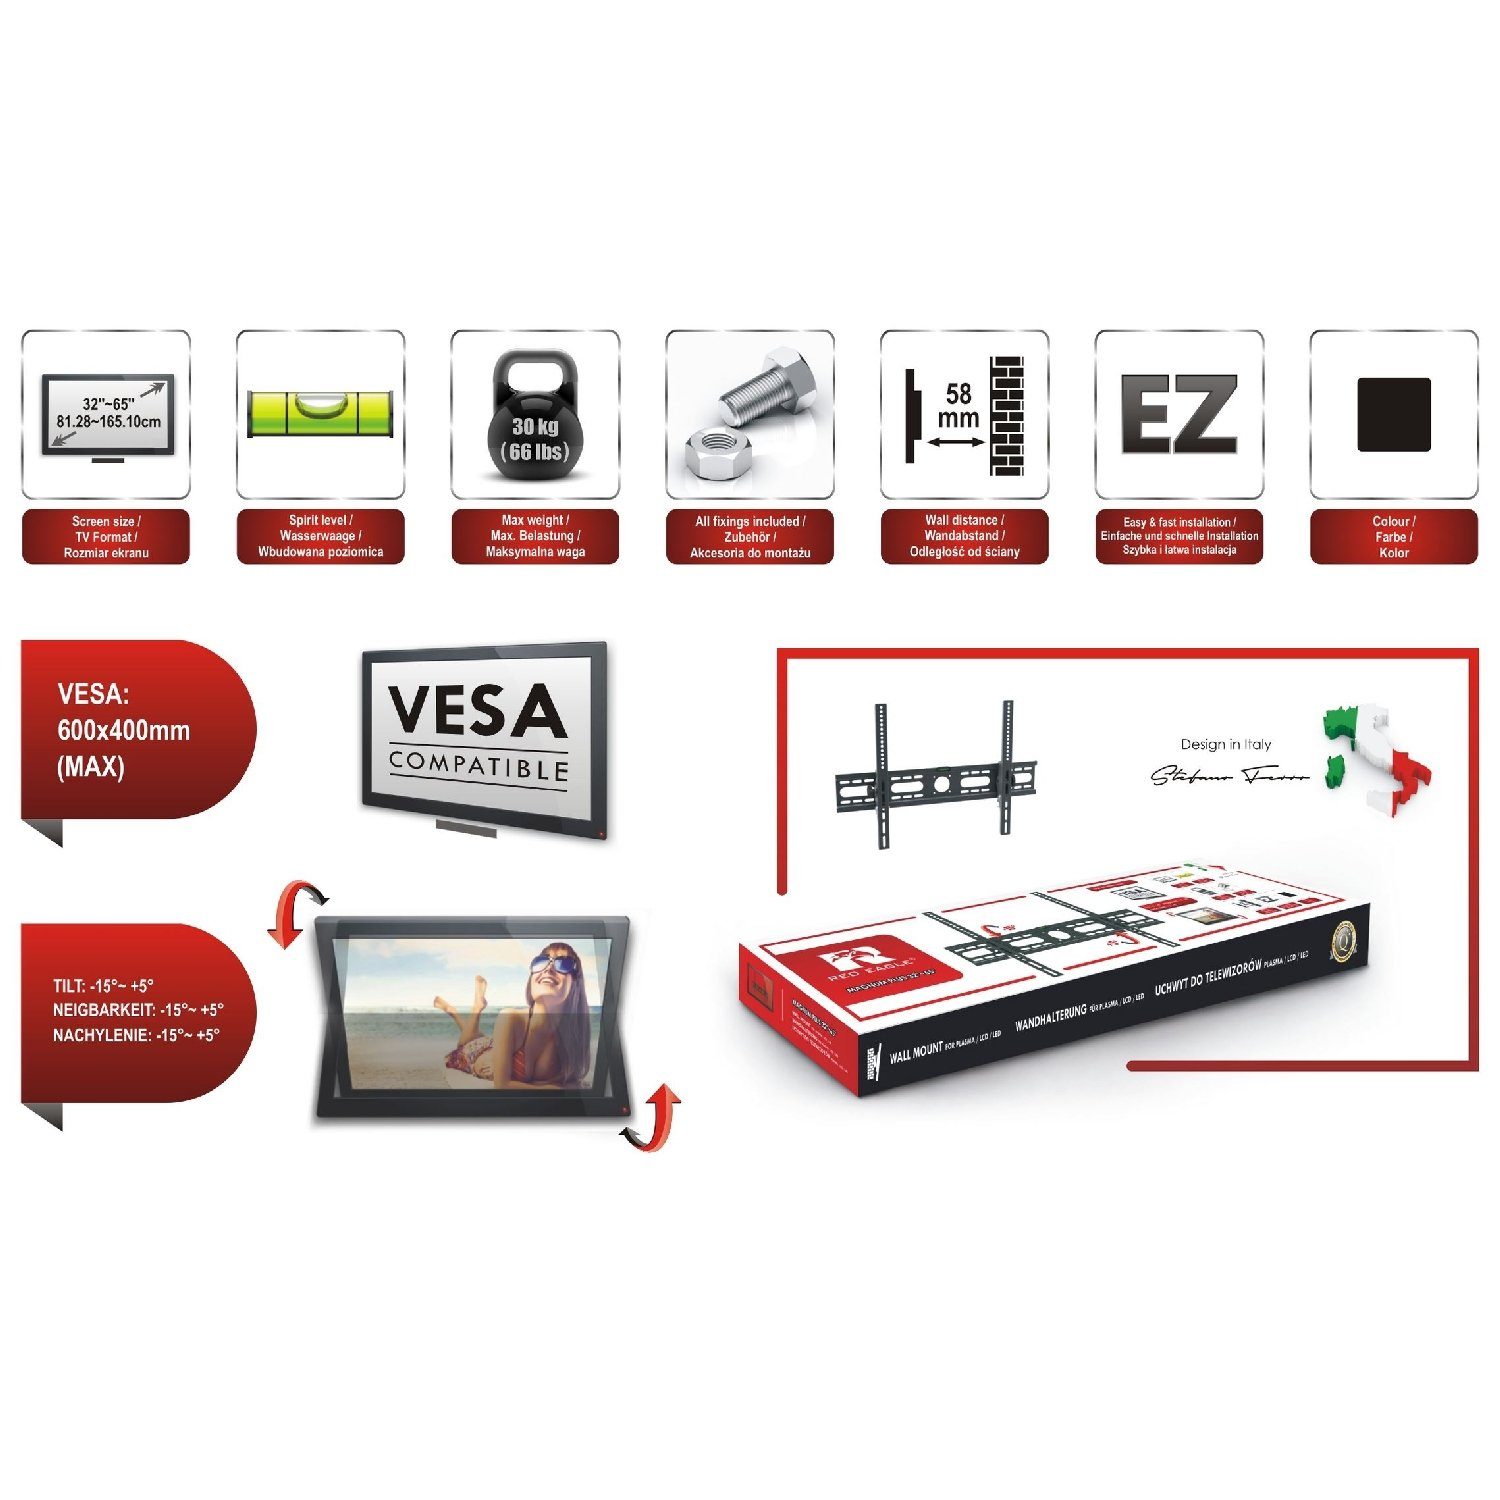 Vesa 65 600×400) RED neigbar - (bis 32-65 Magnum 32 von Fernseher 65 Zoll, - große Zoll Plus - TV-Wandhalterung, Zoll EAGLE für